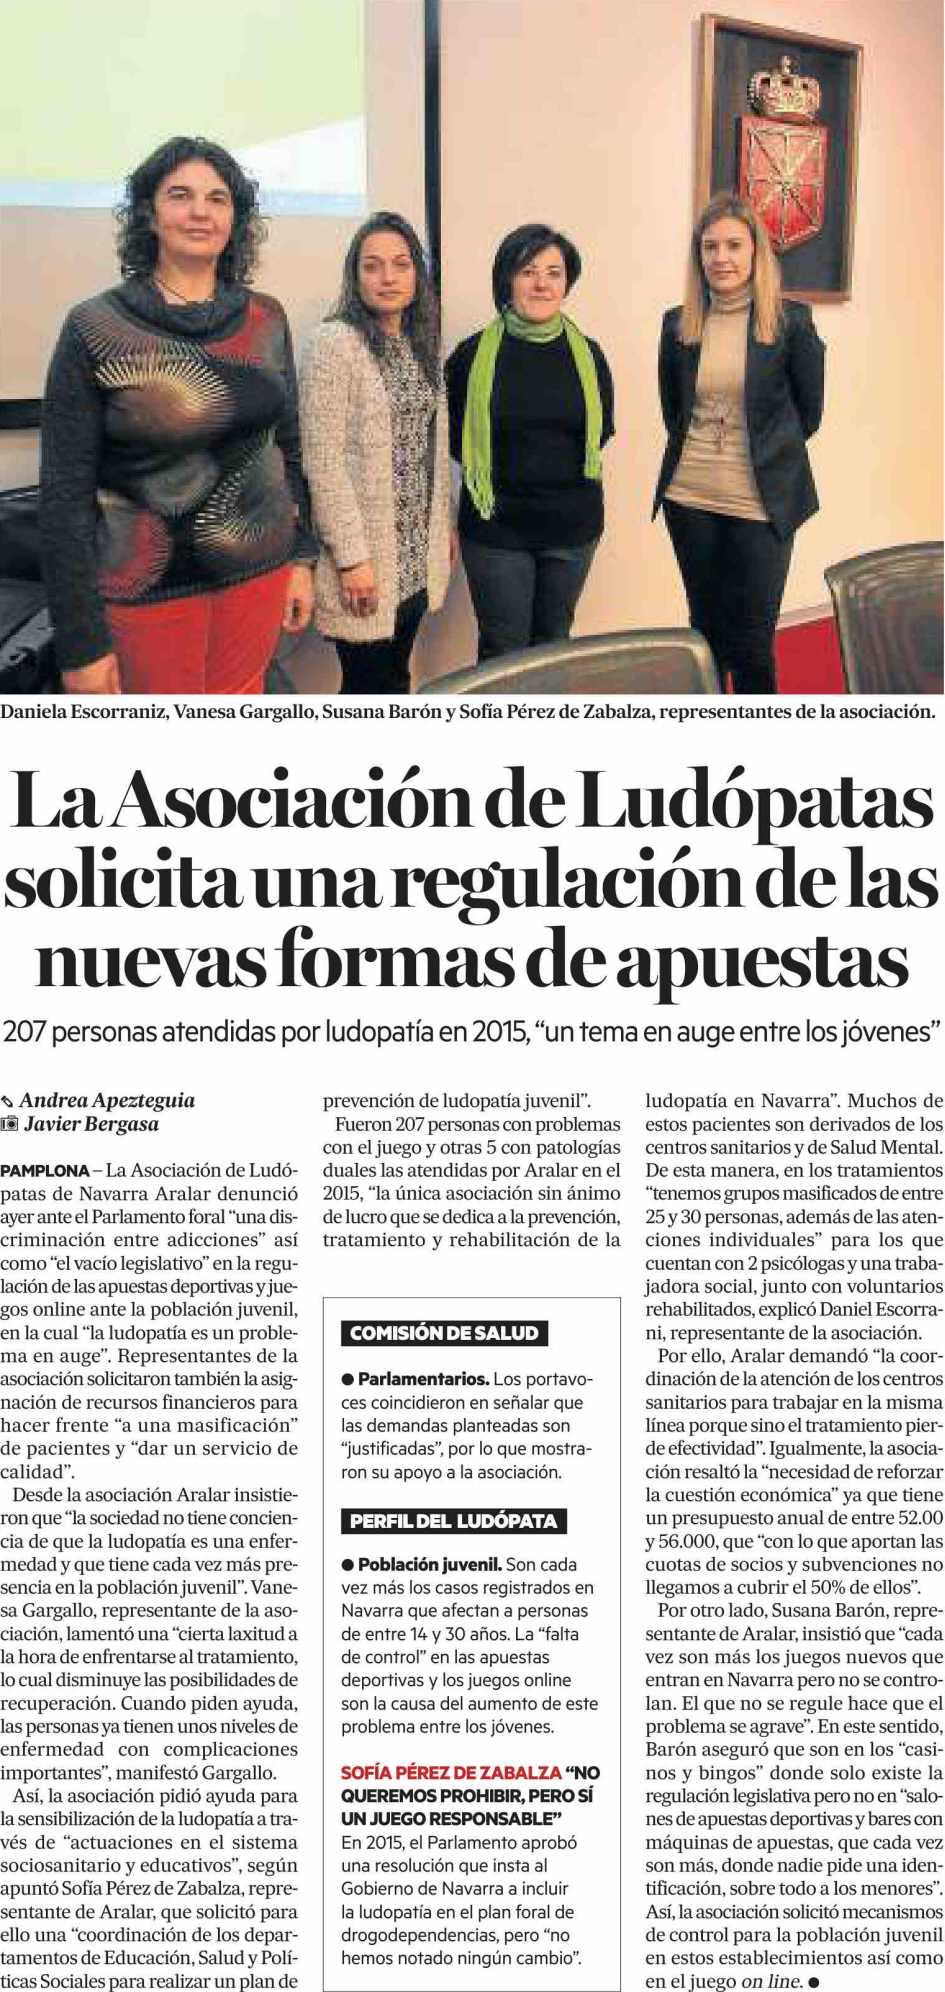 Diario de noticias Navarra 17/02/16 Prensa: Diaria Tirada: 17.258 Ejemplares Difusión: 13.153 Ejemplares Página: 10 Sección: LOCAL Valor: 3.